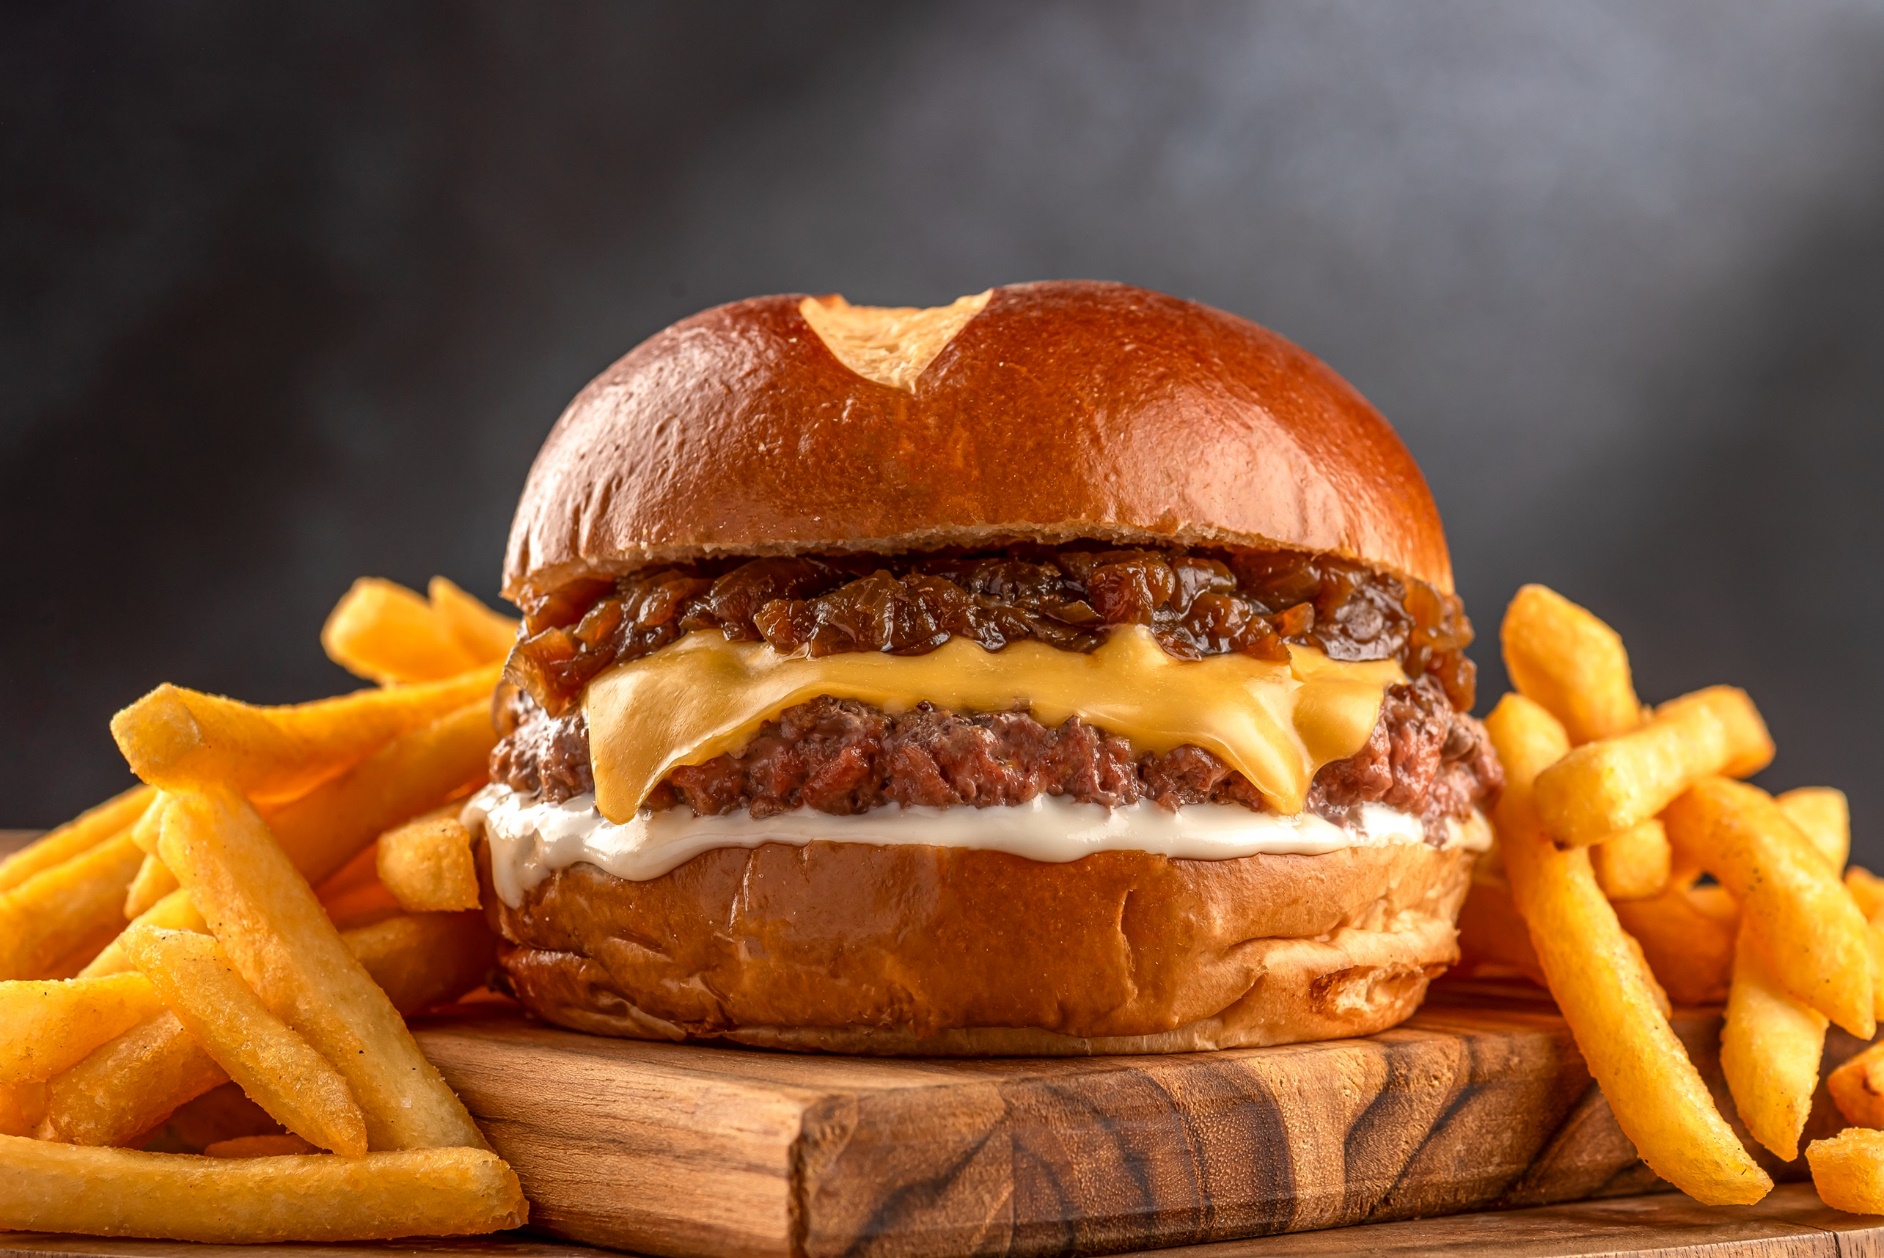 Degusta Burger - Festival de hambúrguer nos shoppings da Barra